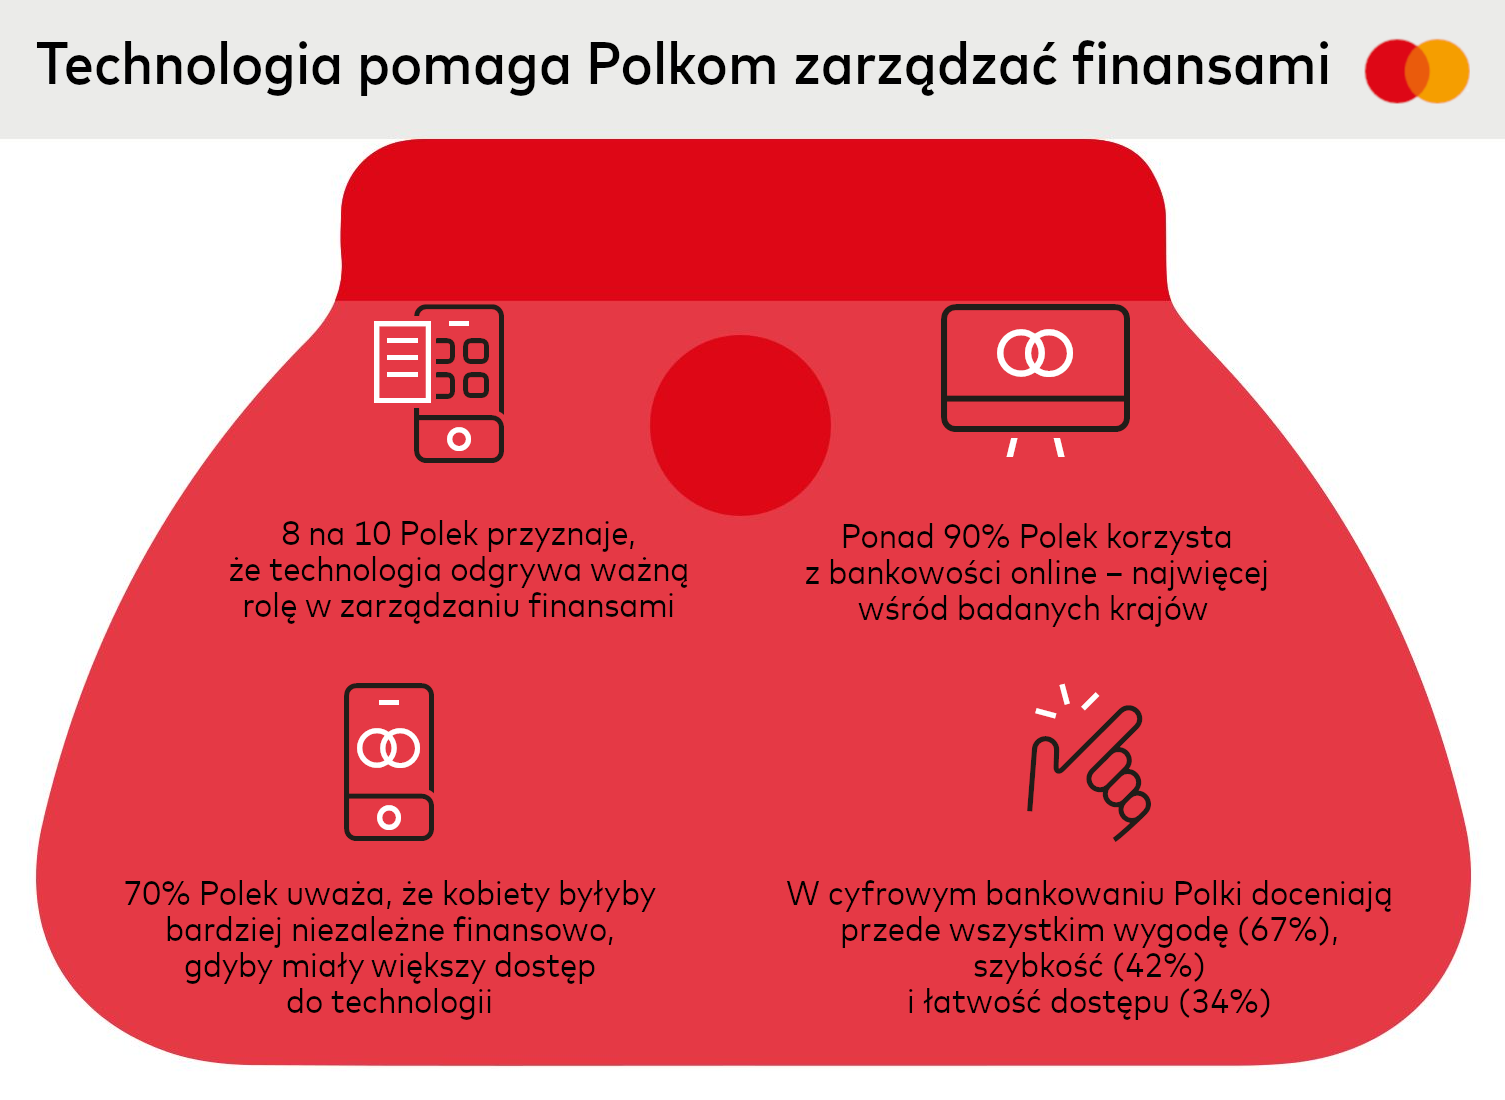 Tehnologia și finanțele femeilor poloneze – Studiul Womenomics